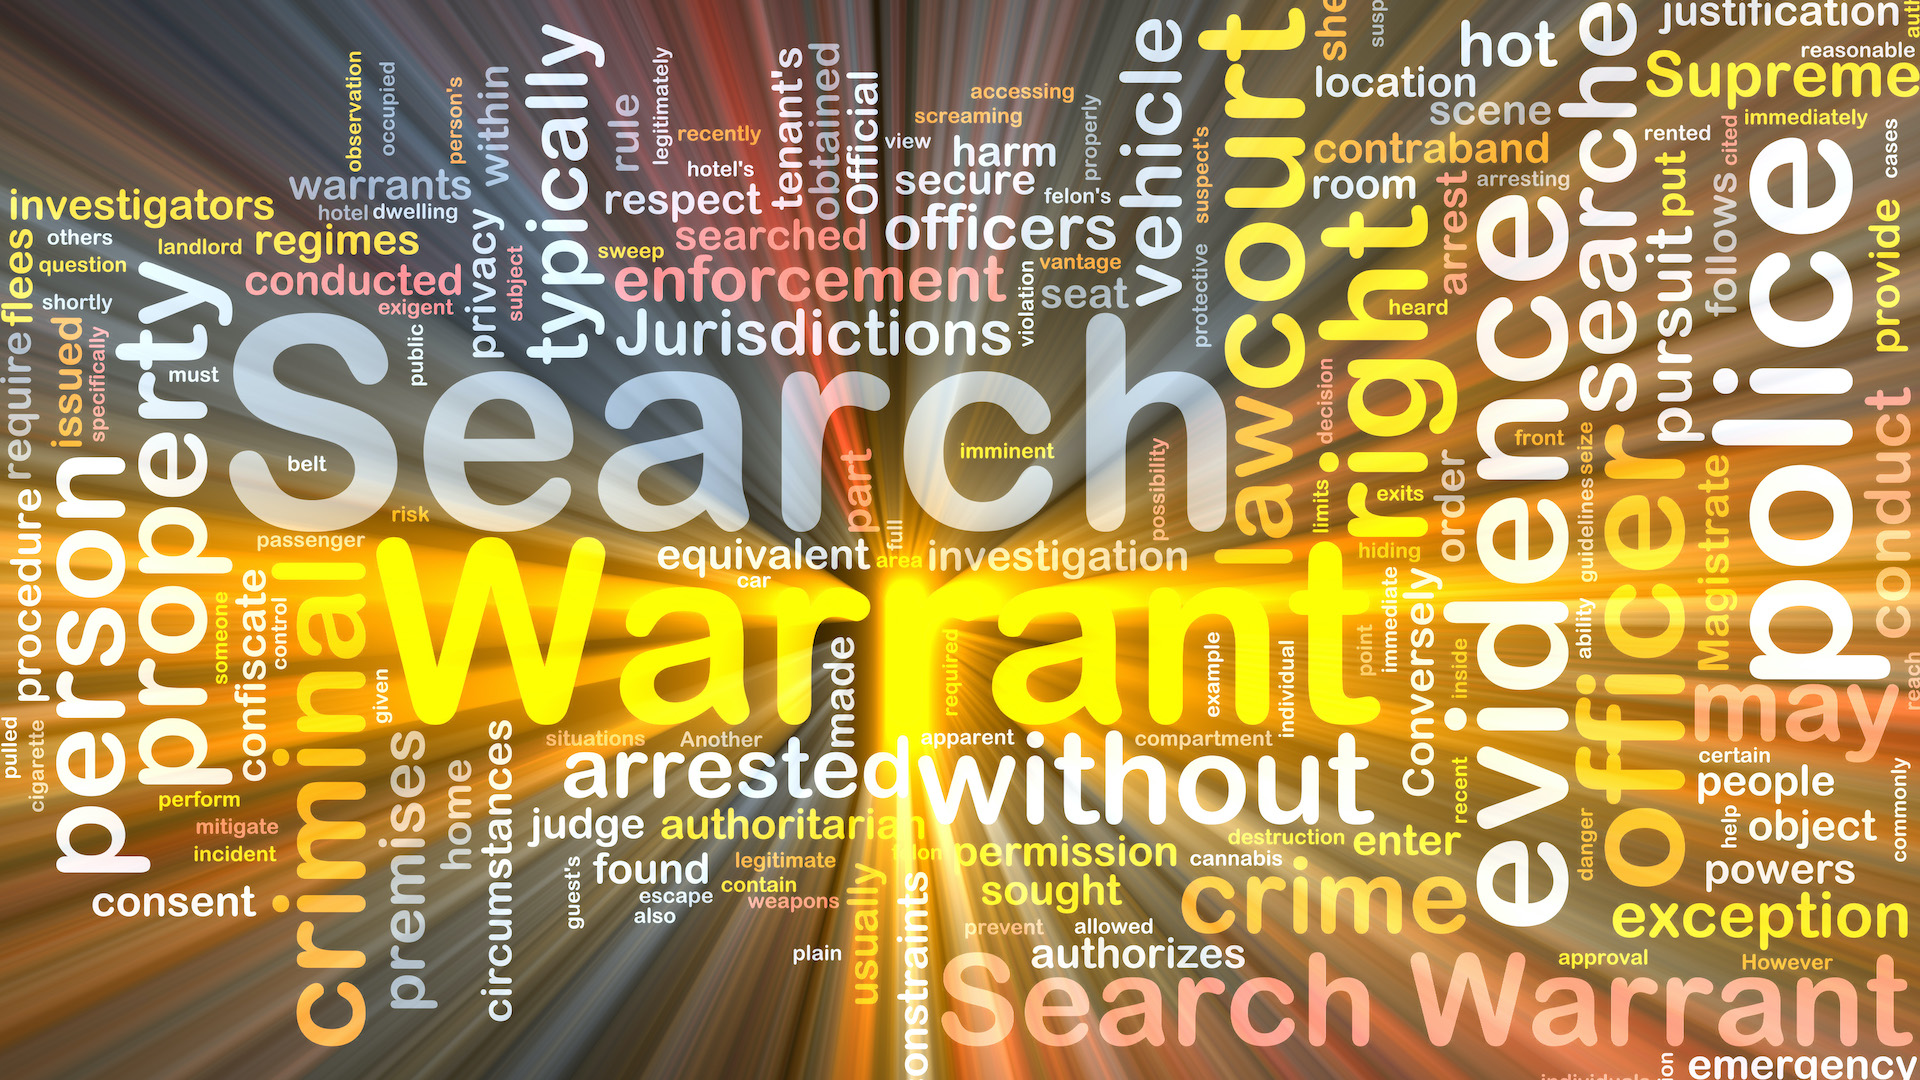 search-warrant